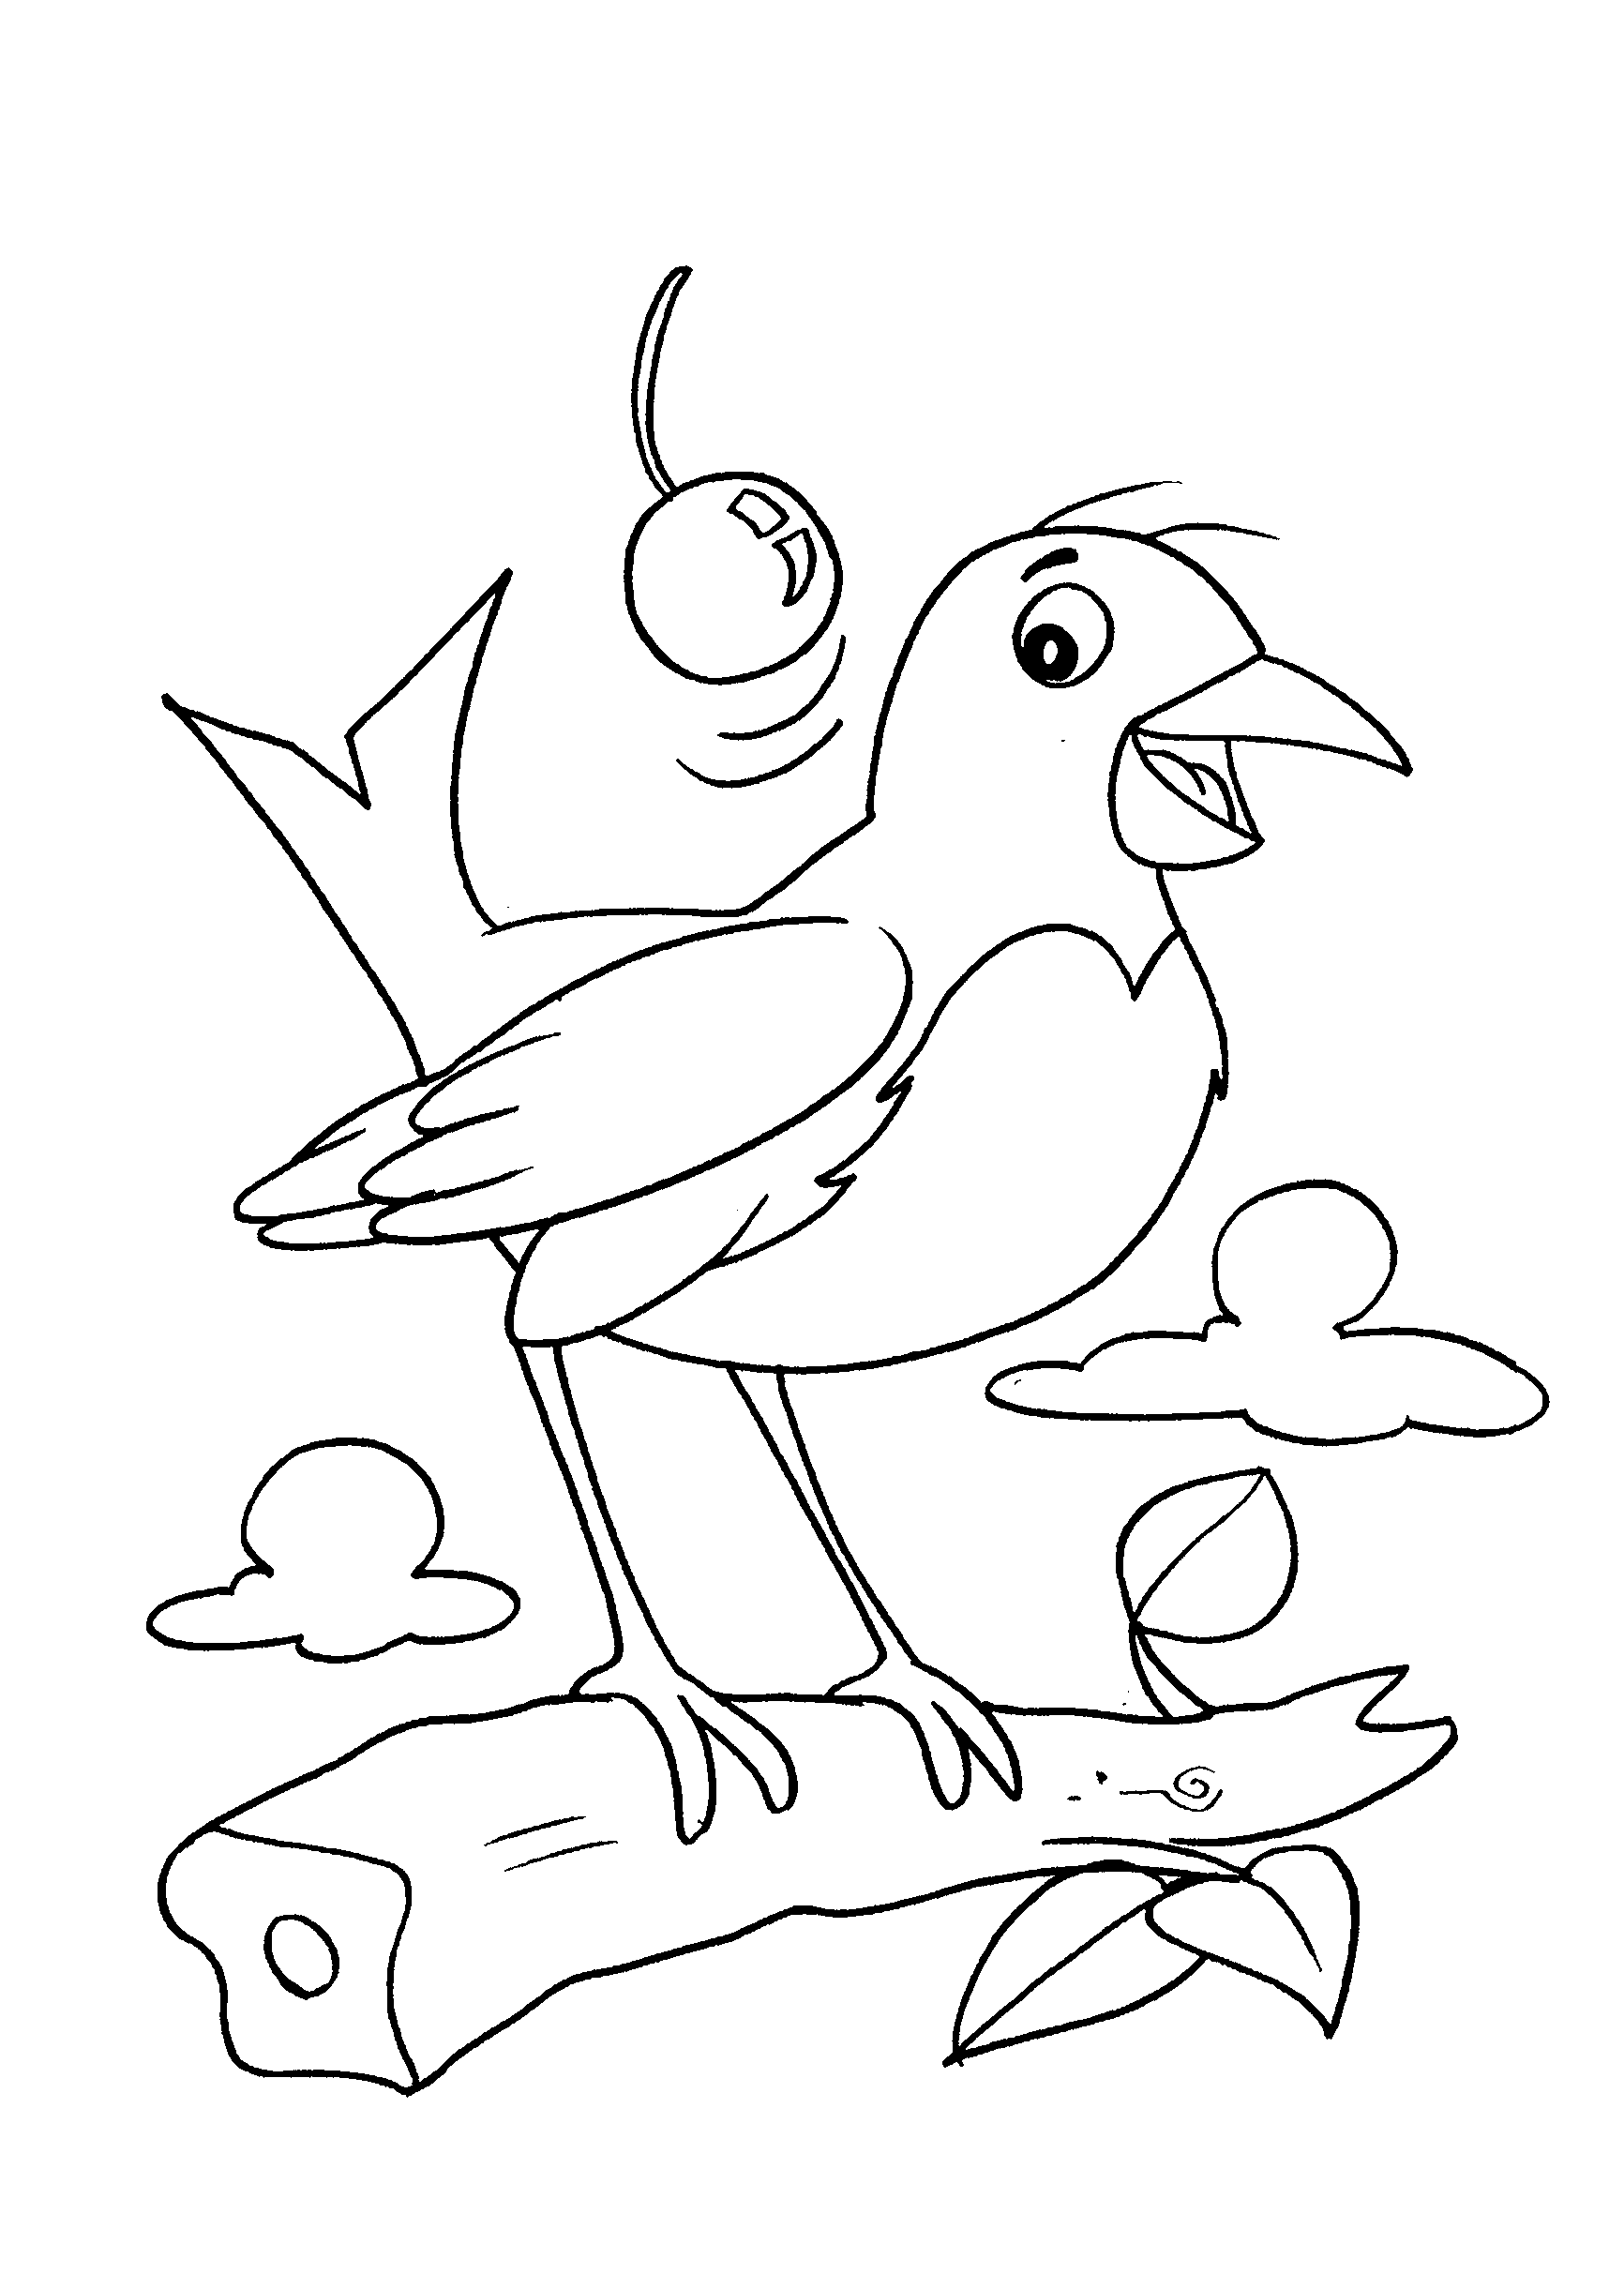 Desenho de passarinho